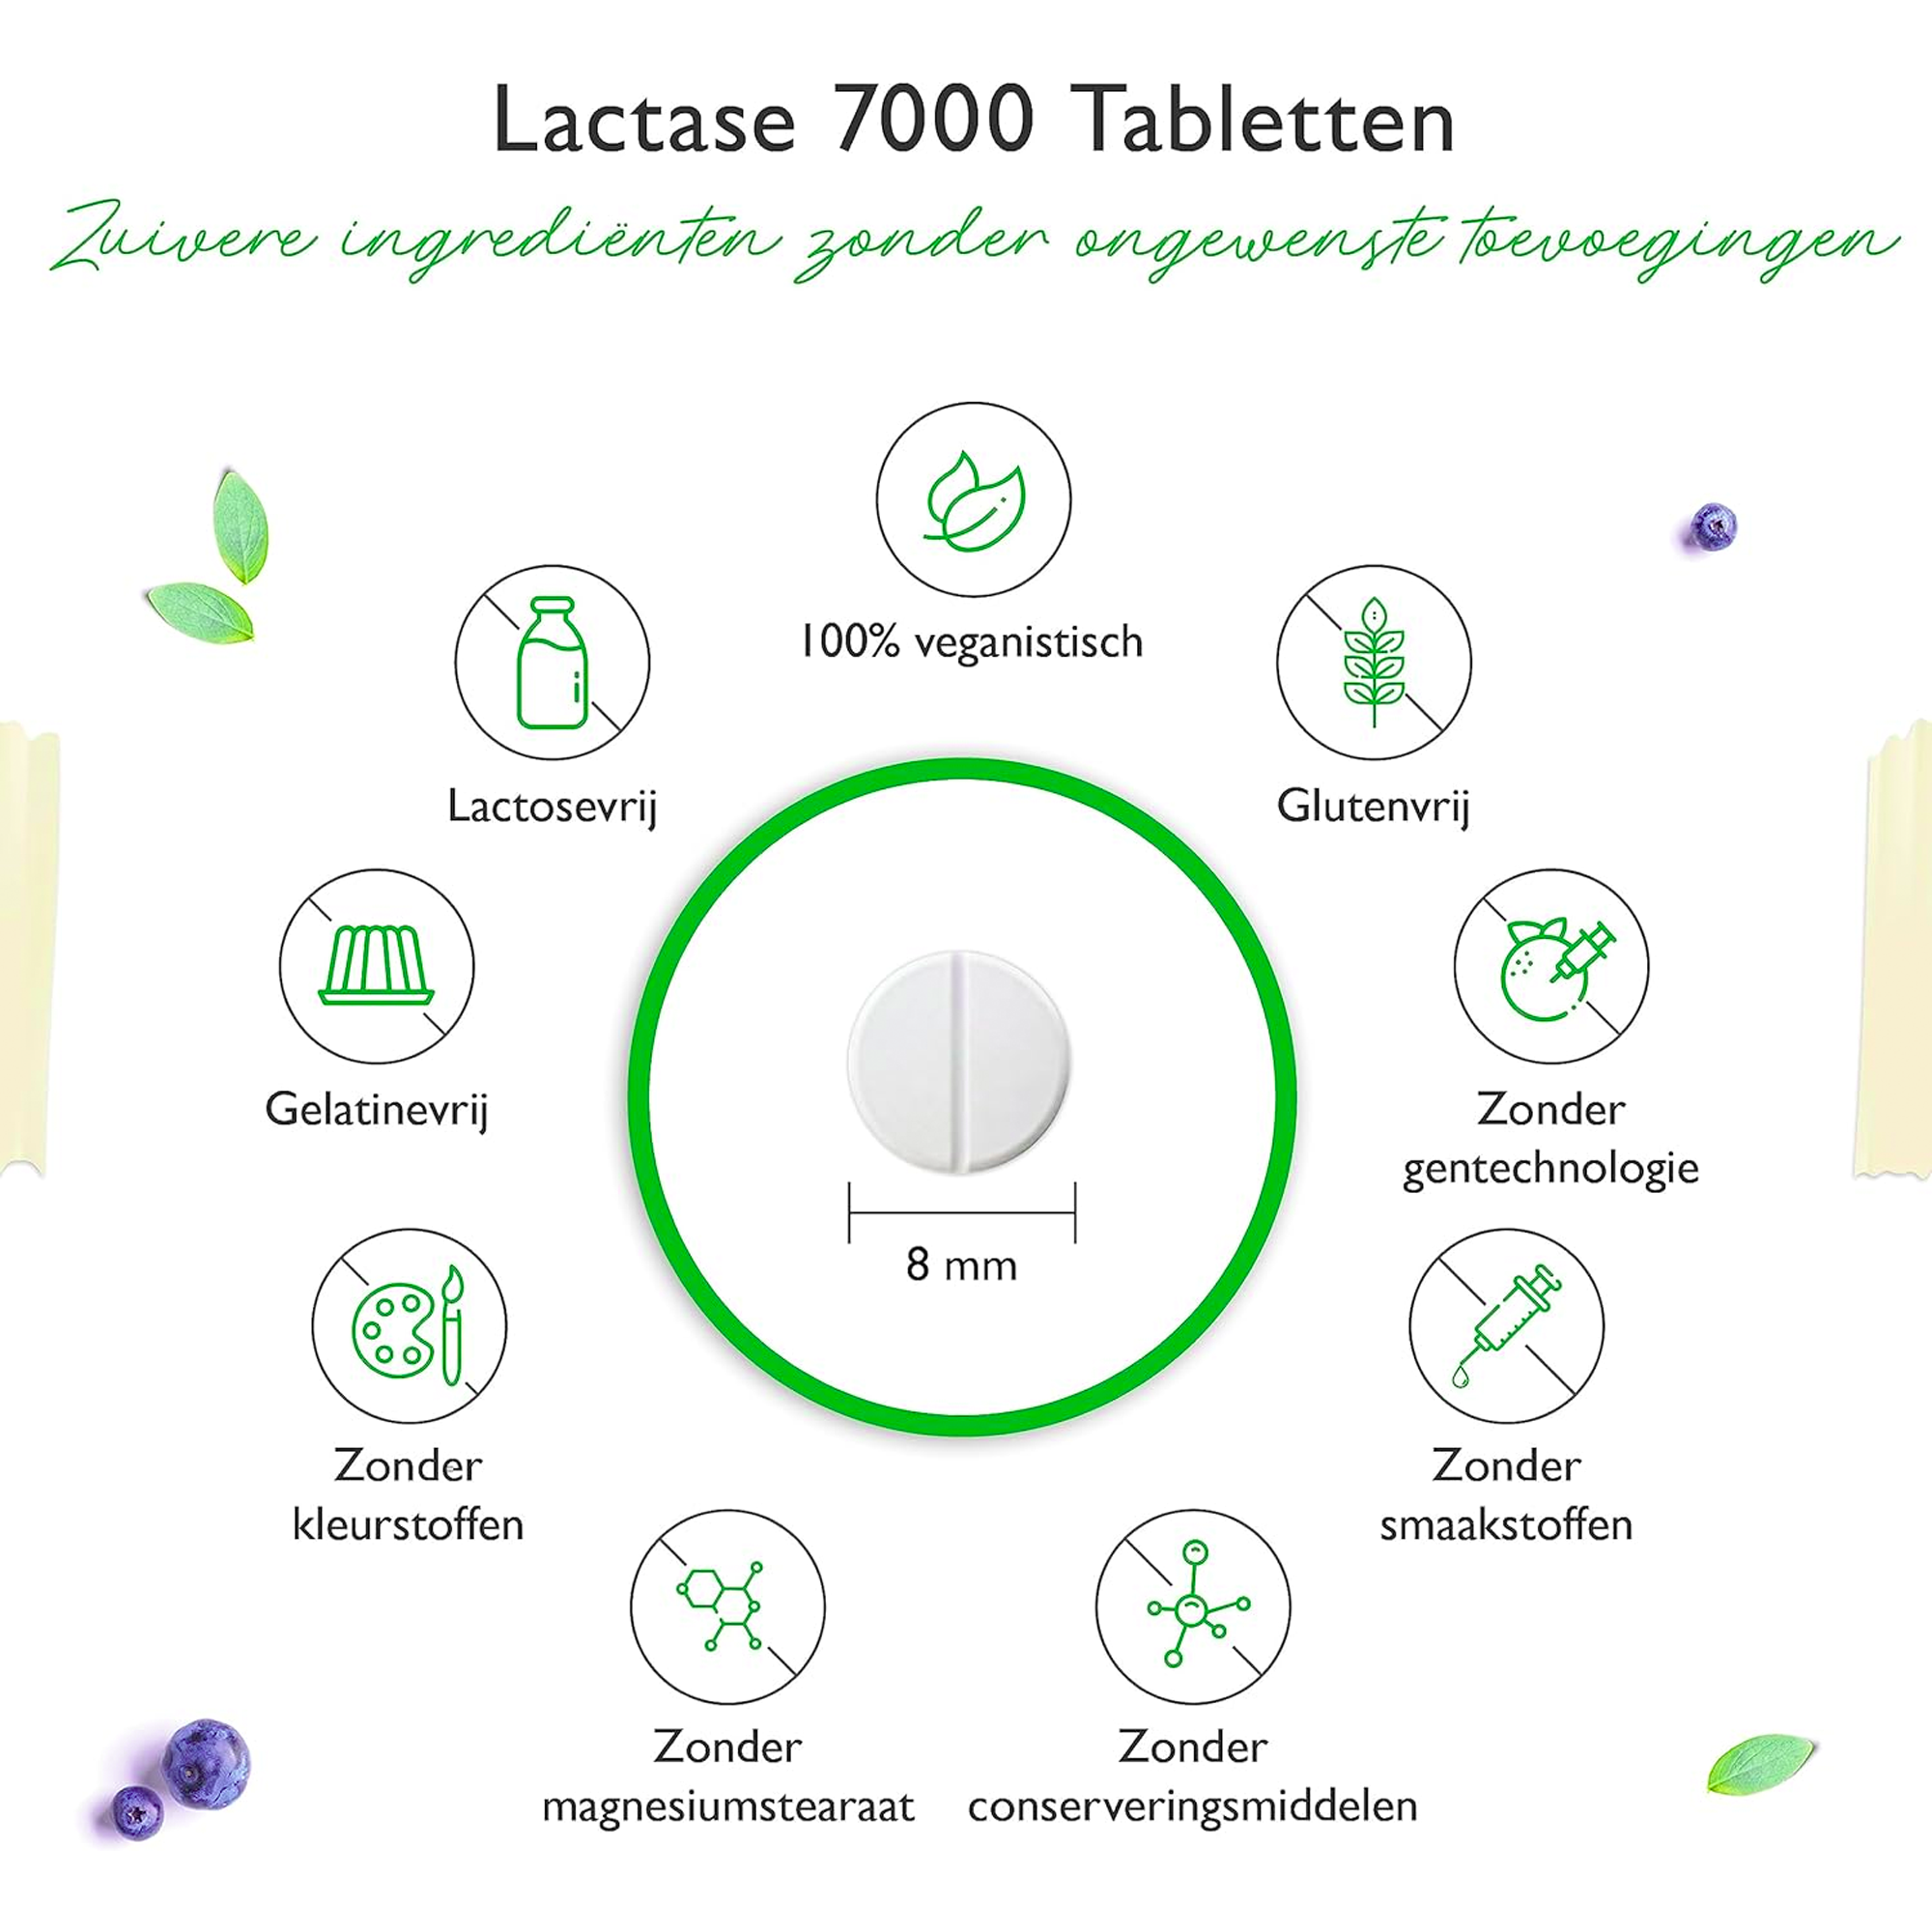 Lactase 7.000 | 365 tabletten met onmiddellijk effect | Hooggedoseerd met 7.000 FCC-eenheden | Voor lactose-intolerantie + melk-intolerantie | Vit4ever